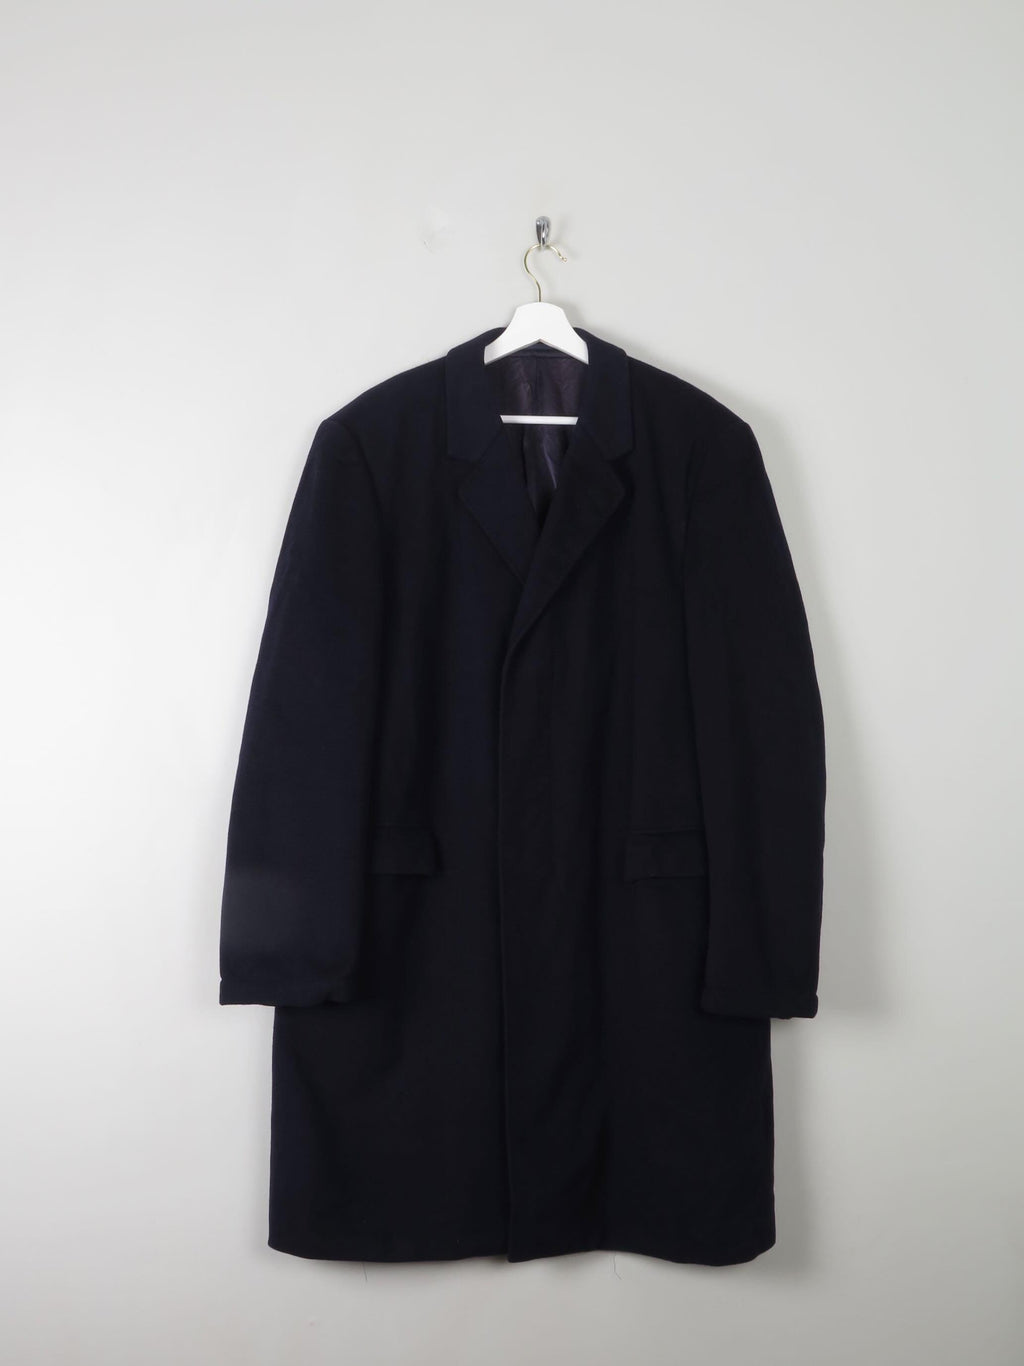 Men's Navy Wool Overcoat L/XL 44/46 - The Harlequin